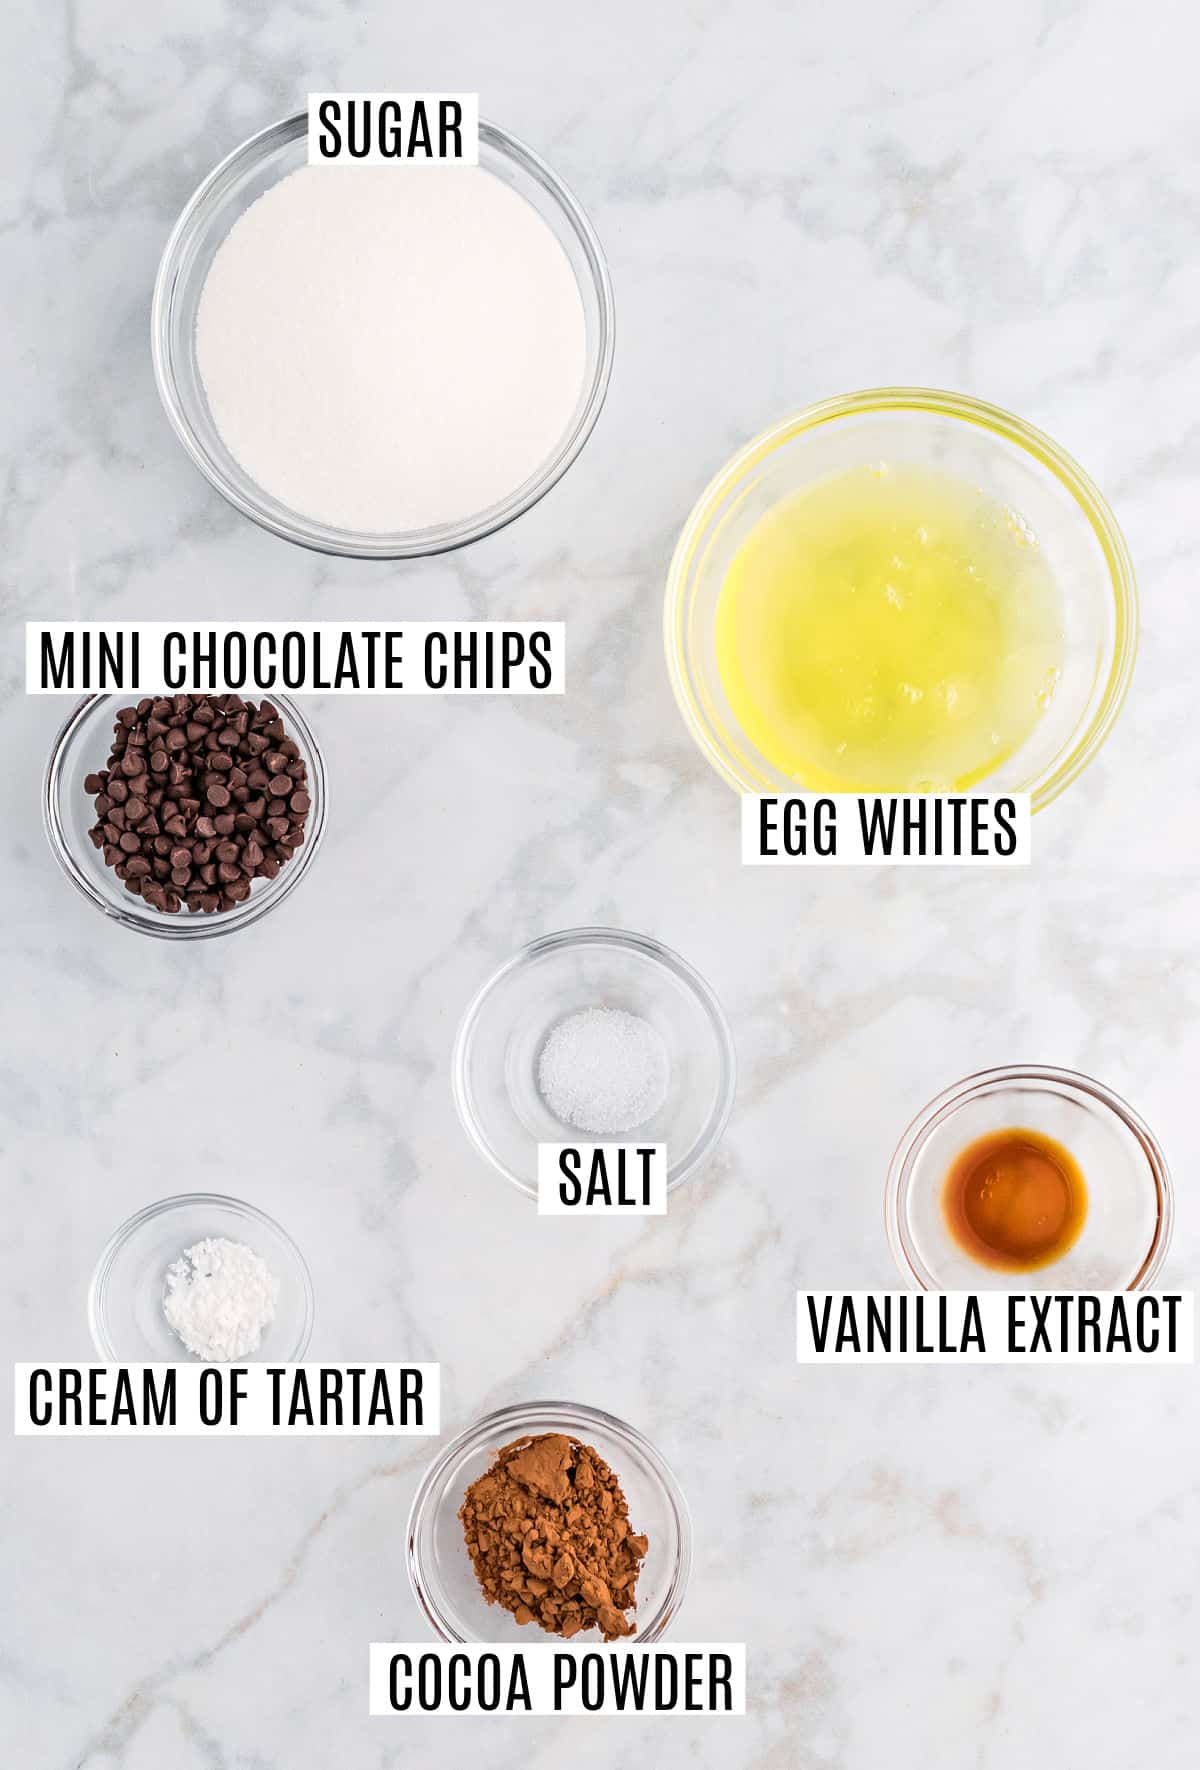 Ingredienti necessari per fare i biscotti alla meringa al cioccolato.